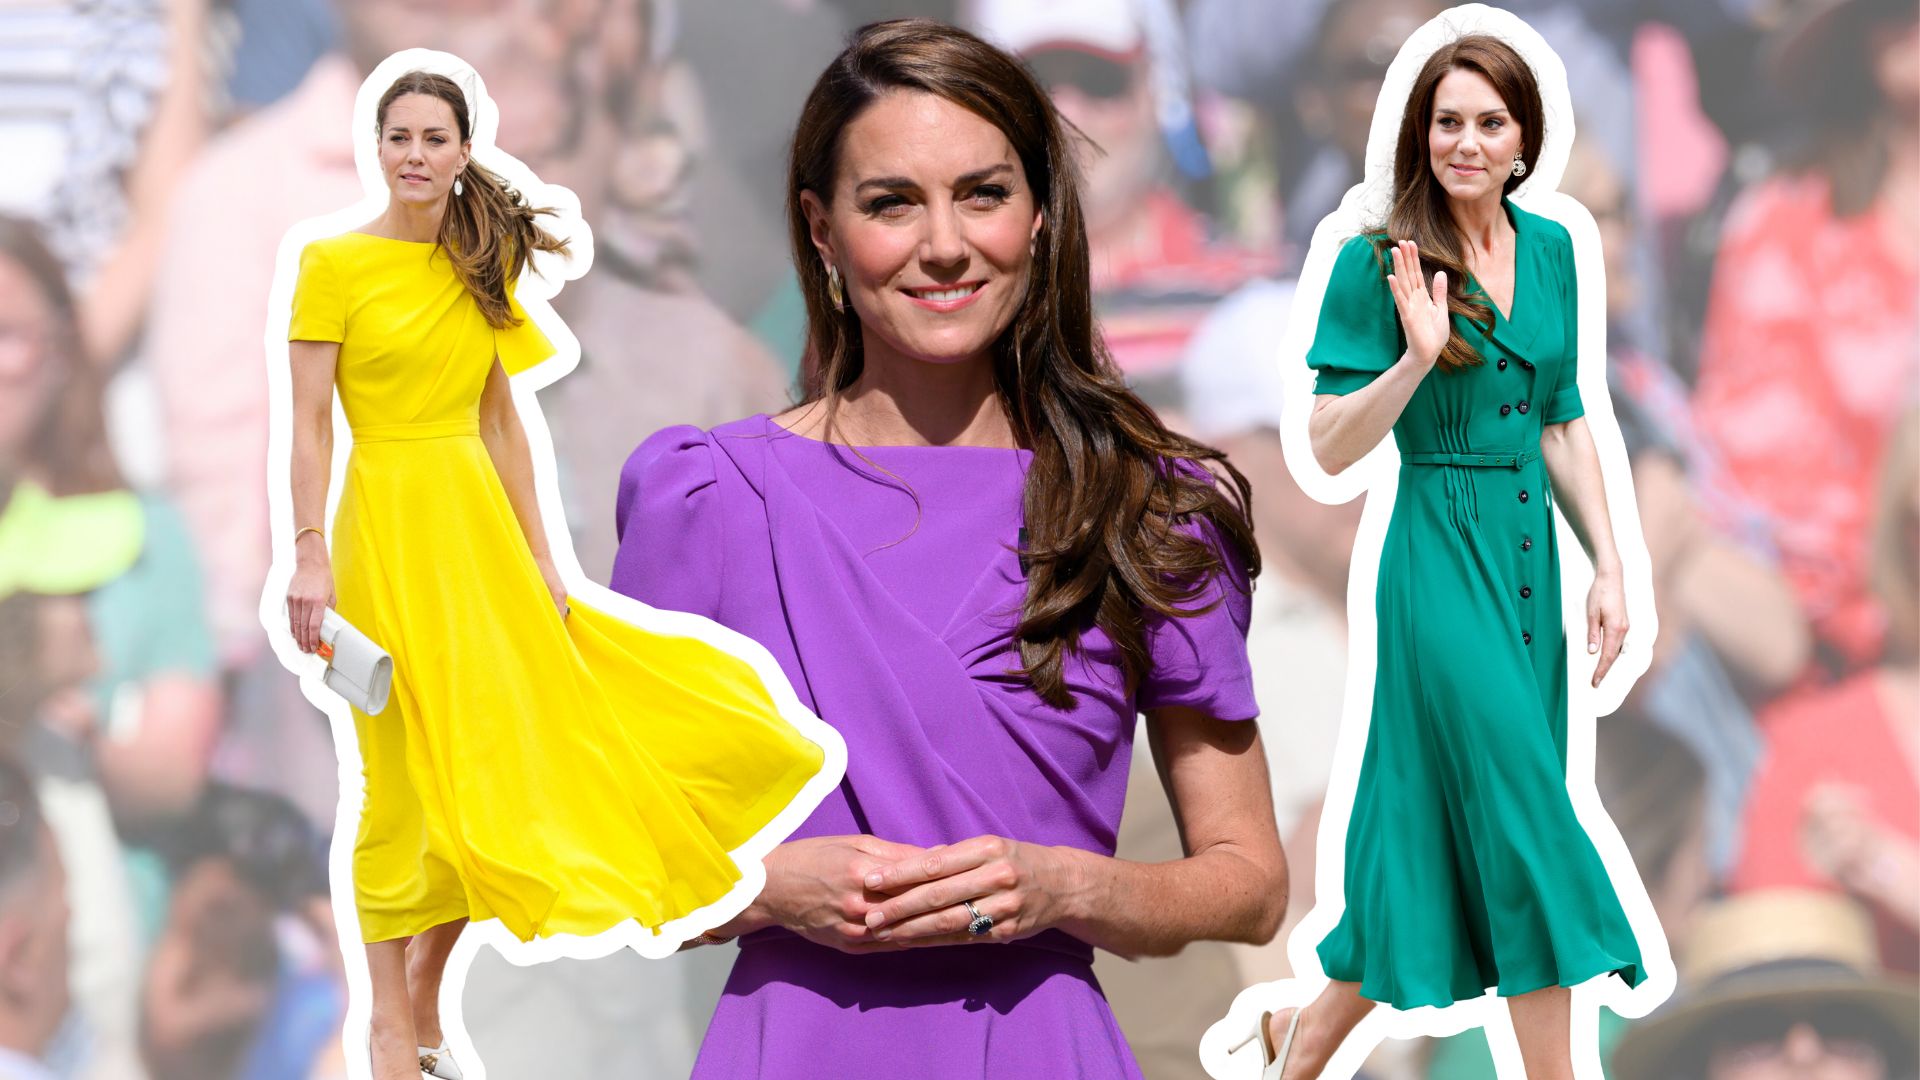 Κάν’ το όπως η Kate Middleton: H αγαπημένη της γραμμή στα φορέματα κολακεύει όλες τις γυναίκες ανεξάρτητα από τον σωματότυπο